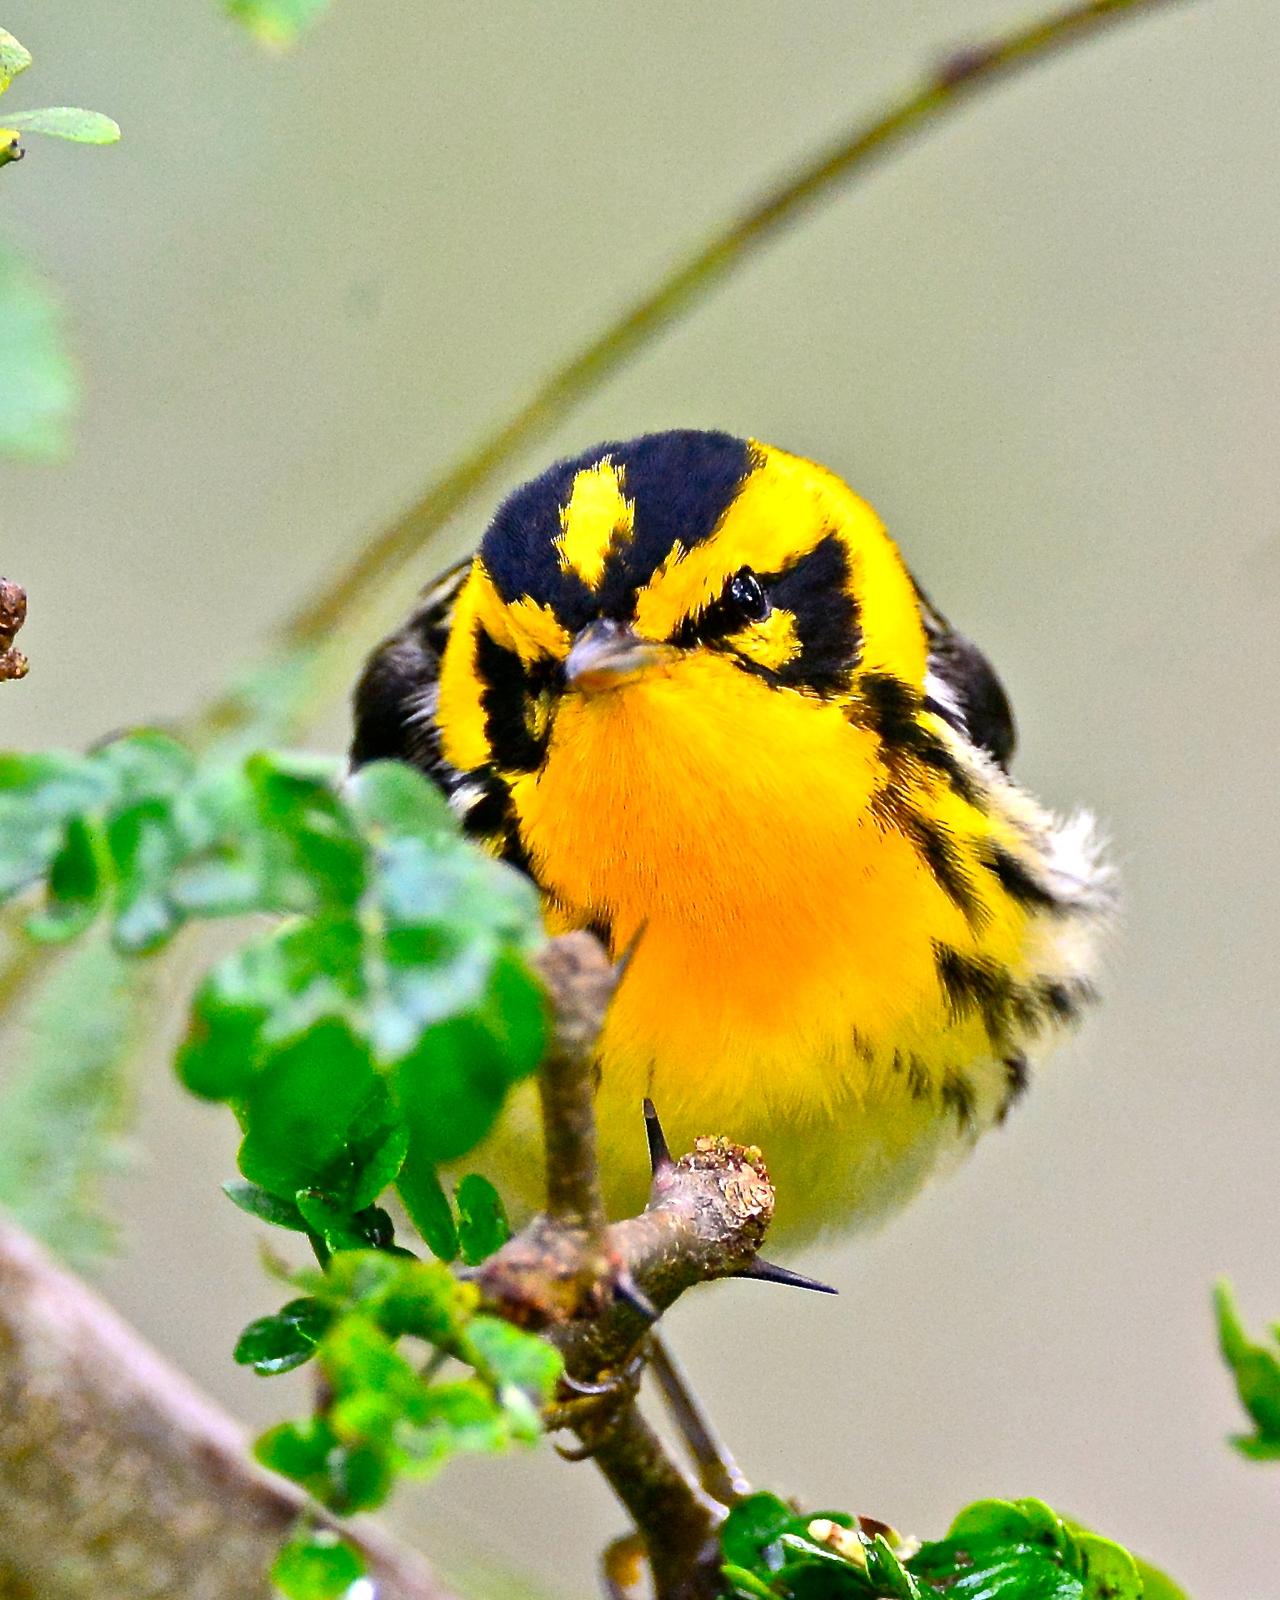 Blackburnian Warbler Photo by Gerald Friesen